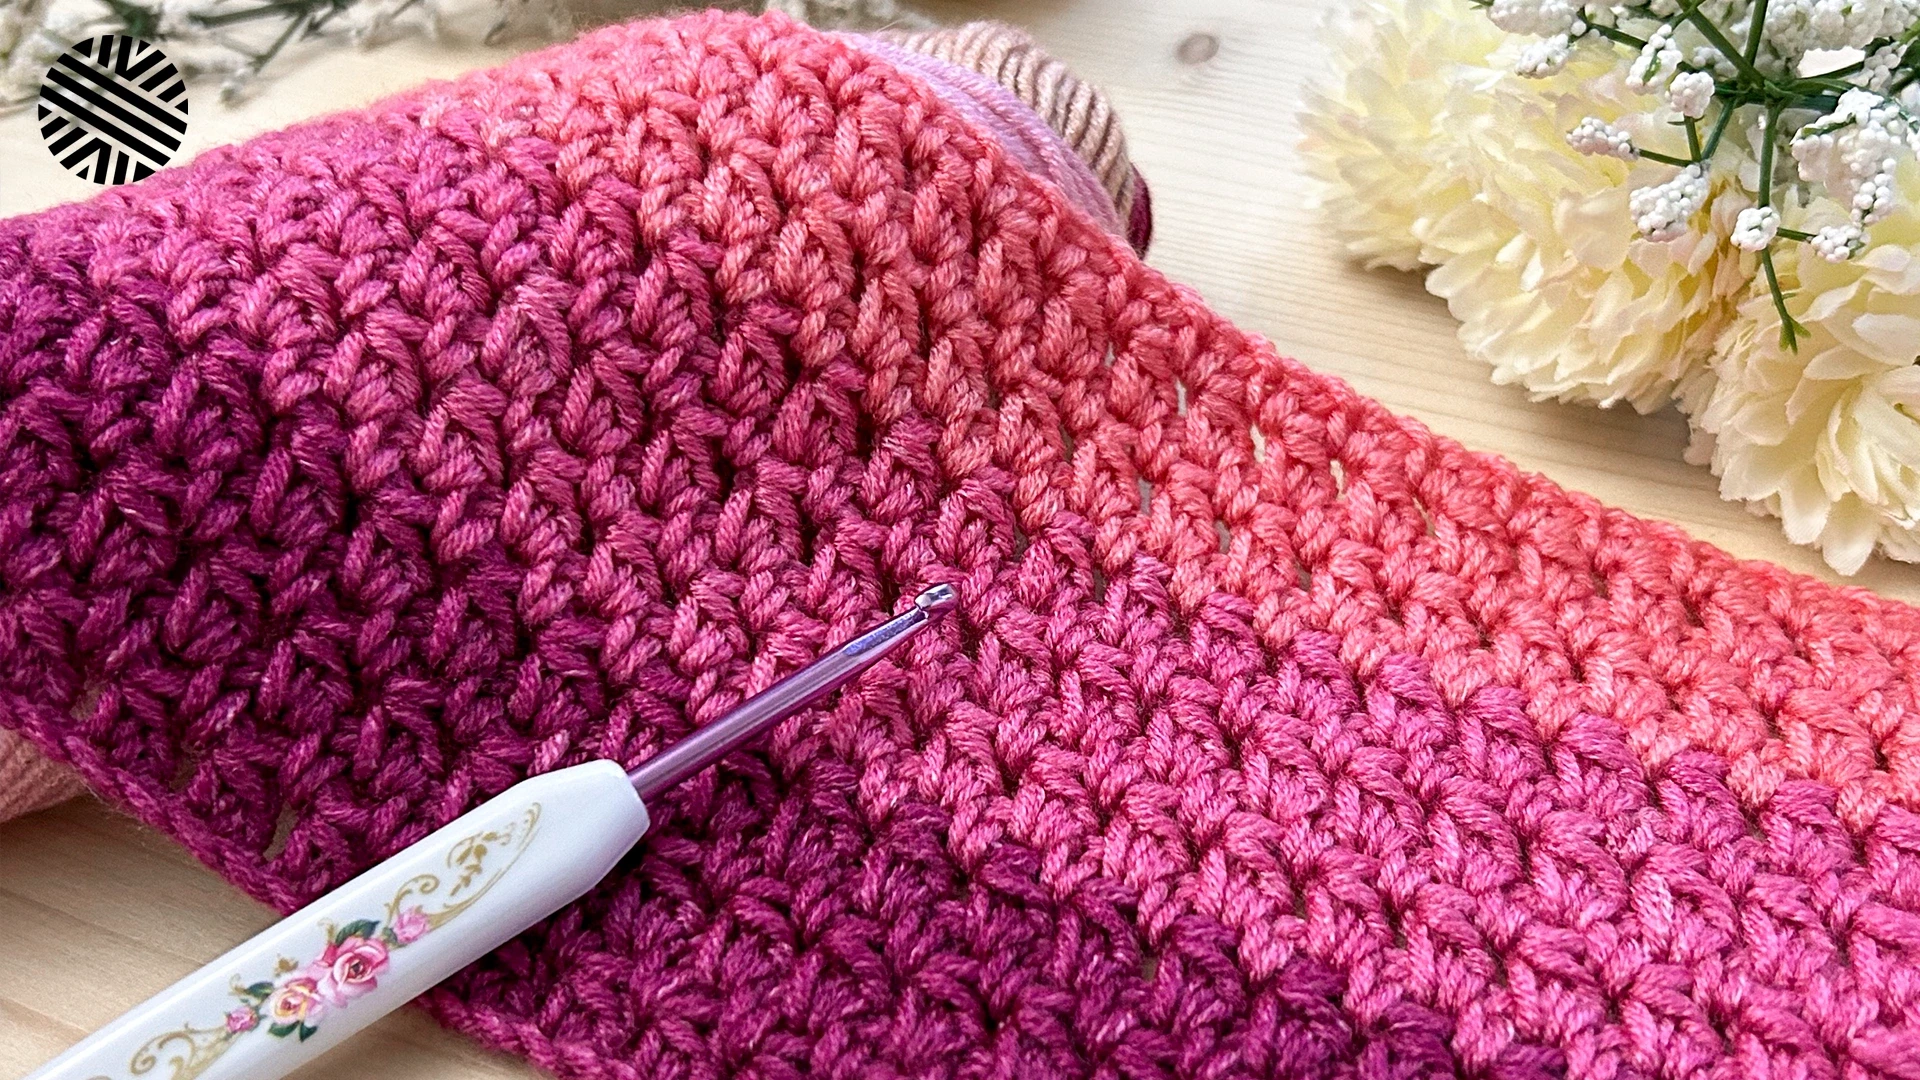 Learn to Crochet Kit! - The Secret Crocheter